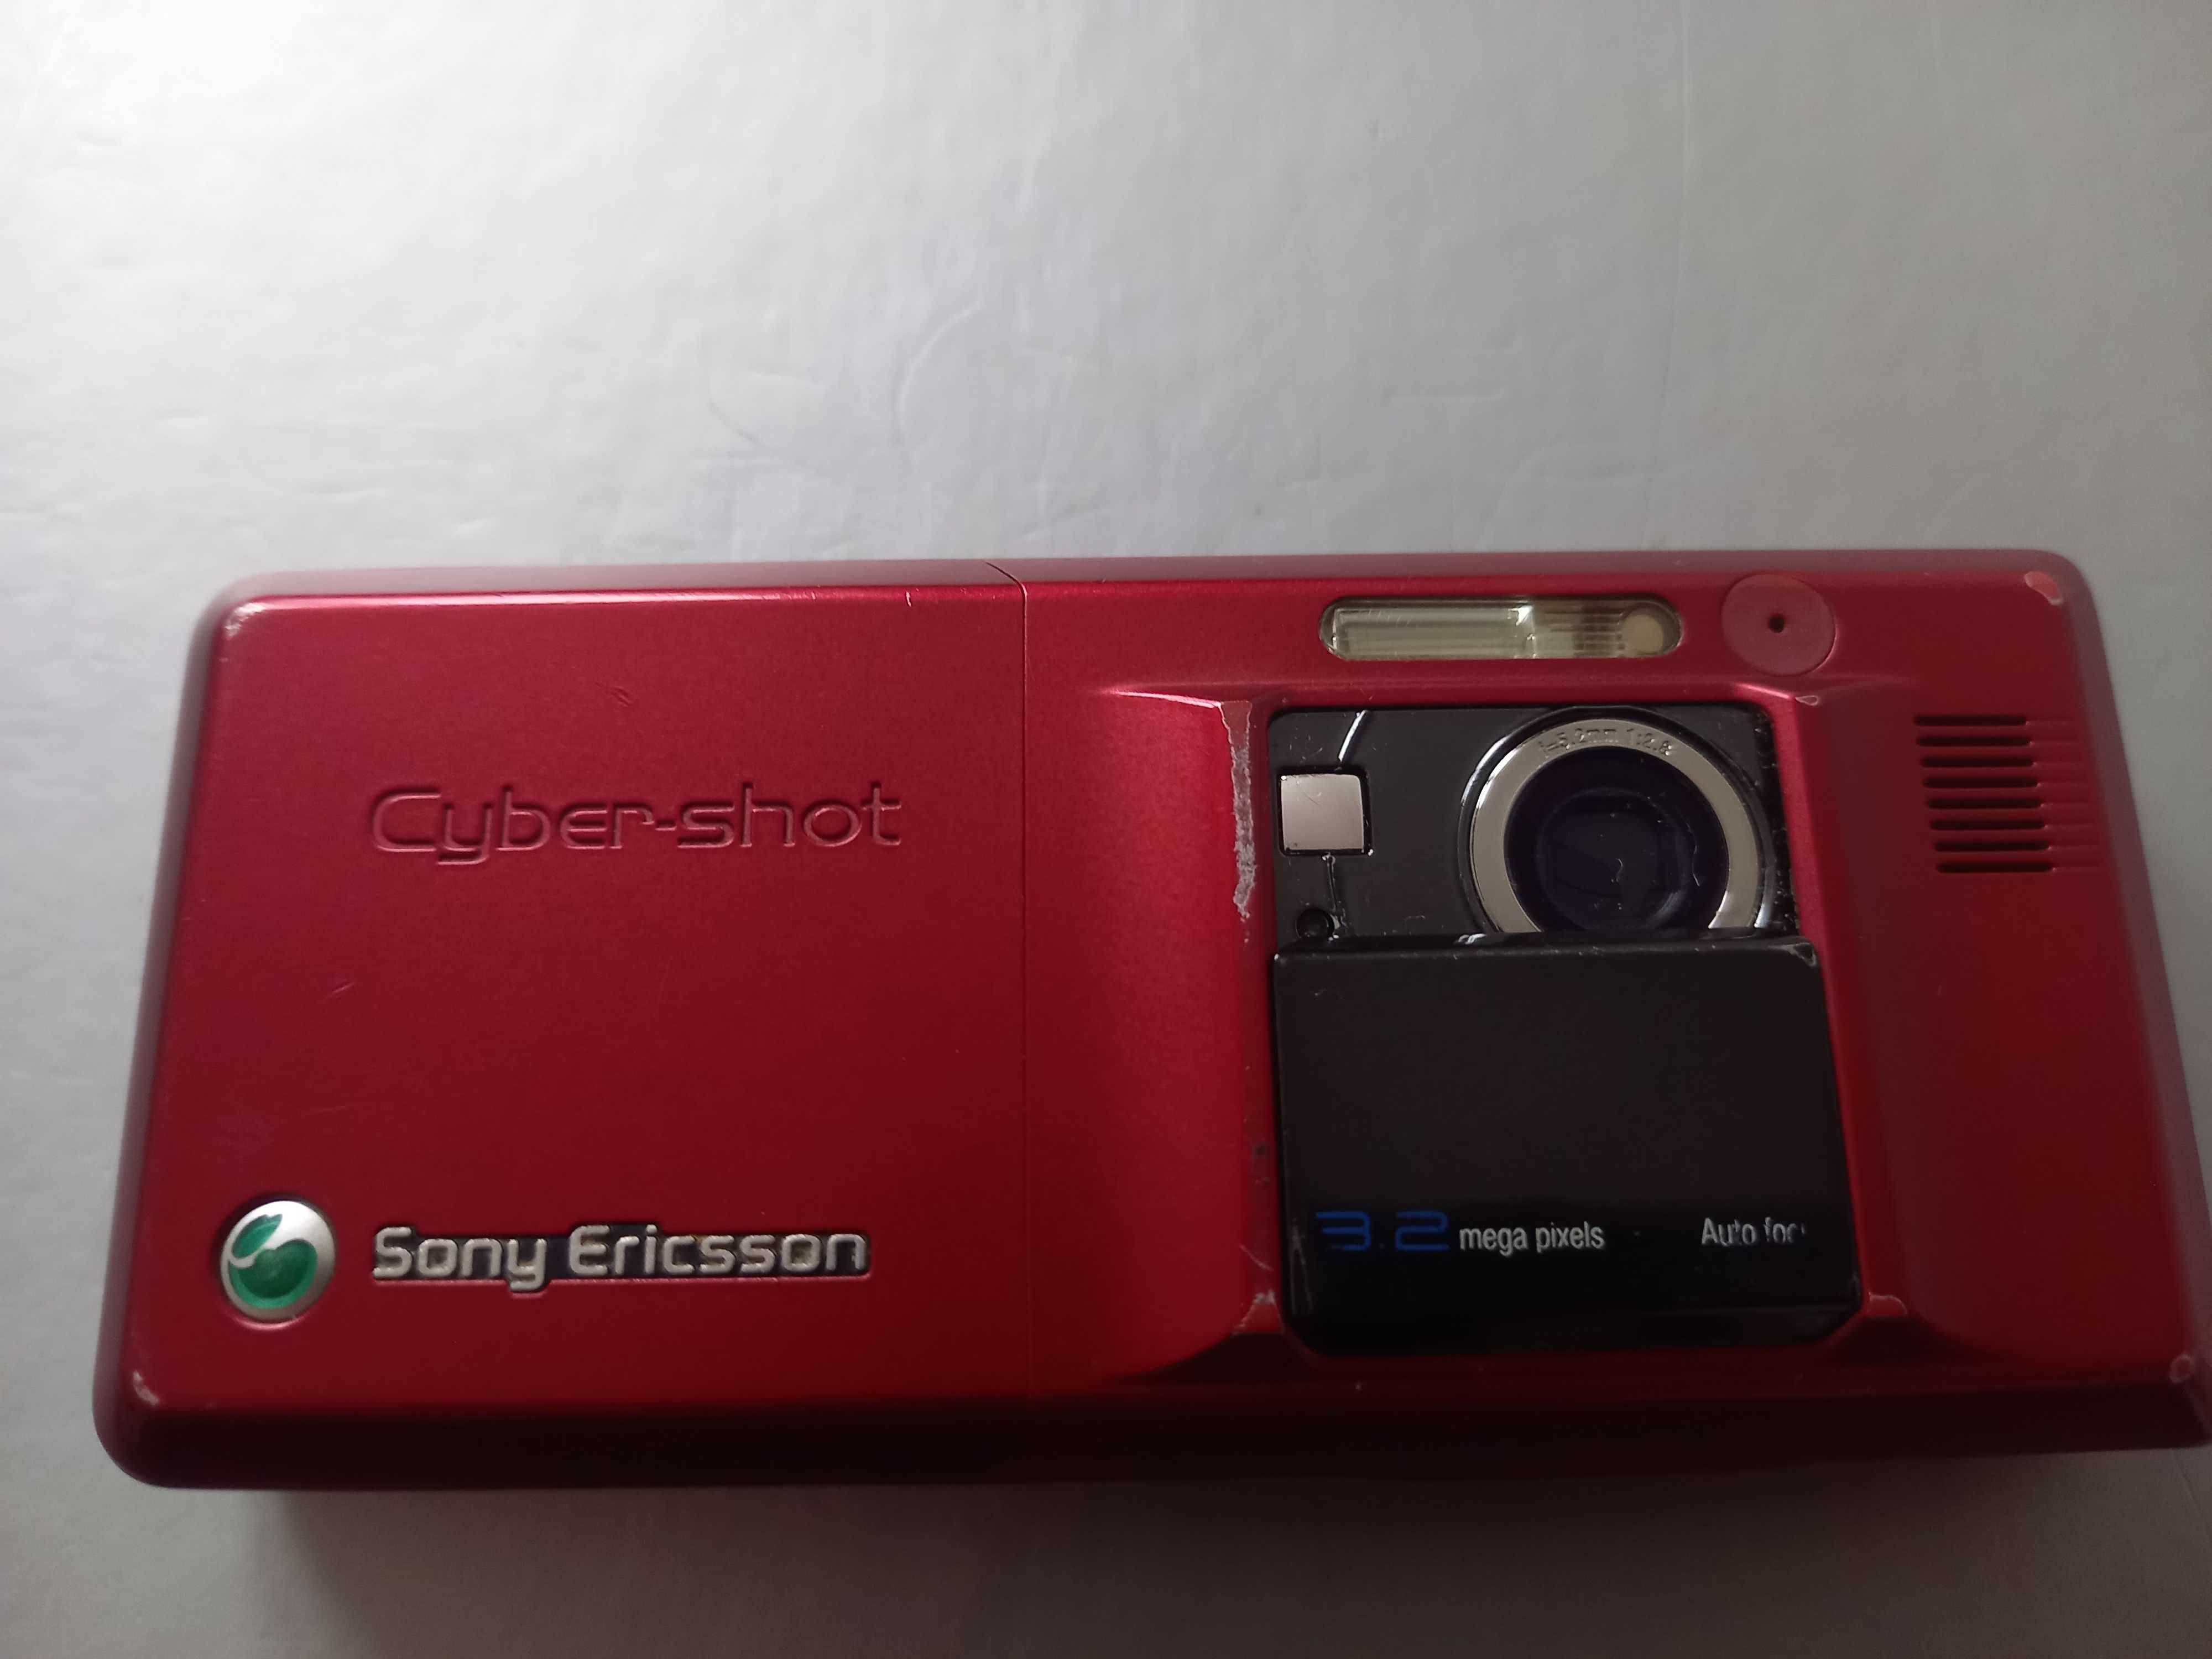 Sony Ericsson Cyber-shot k810i